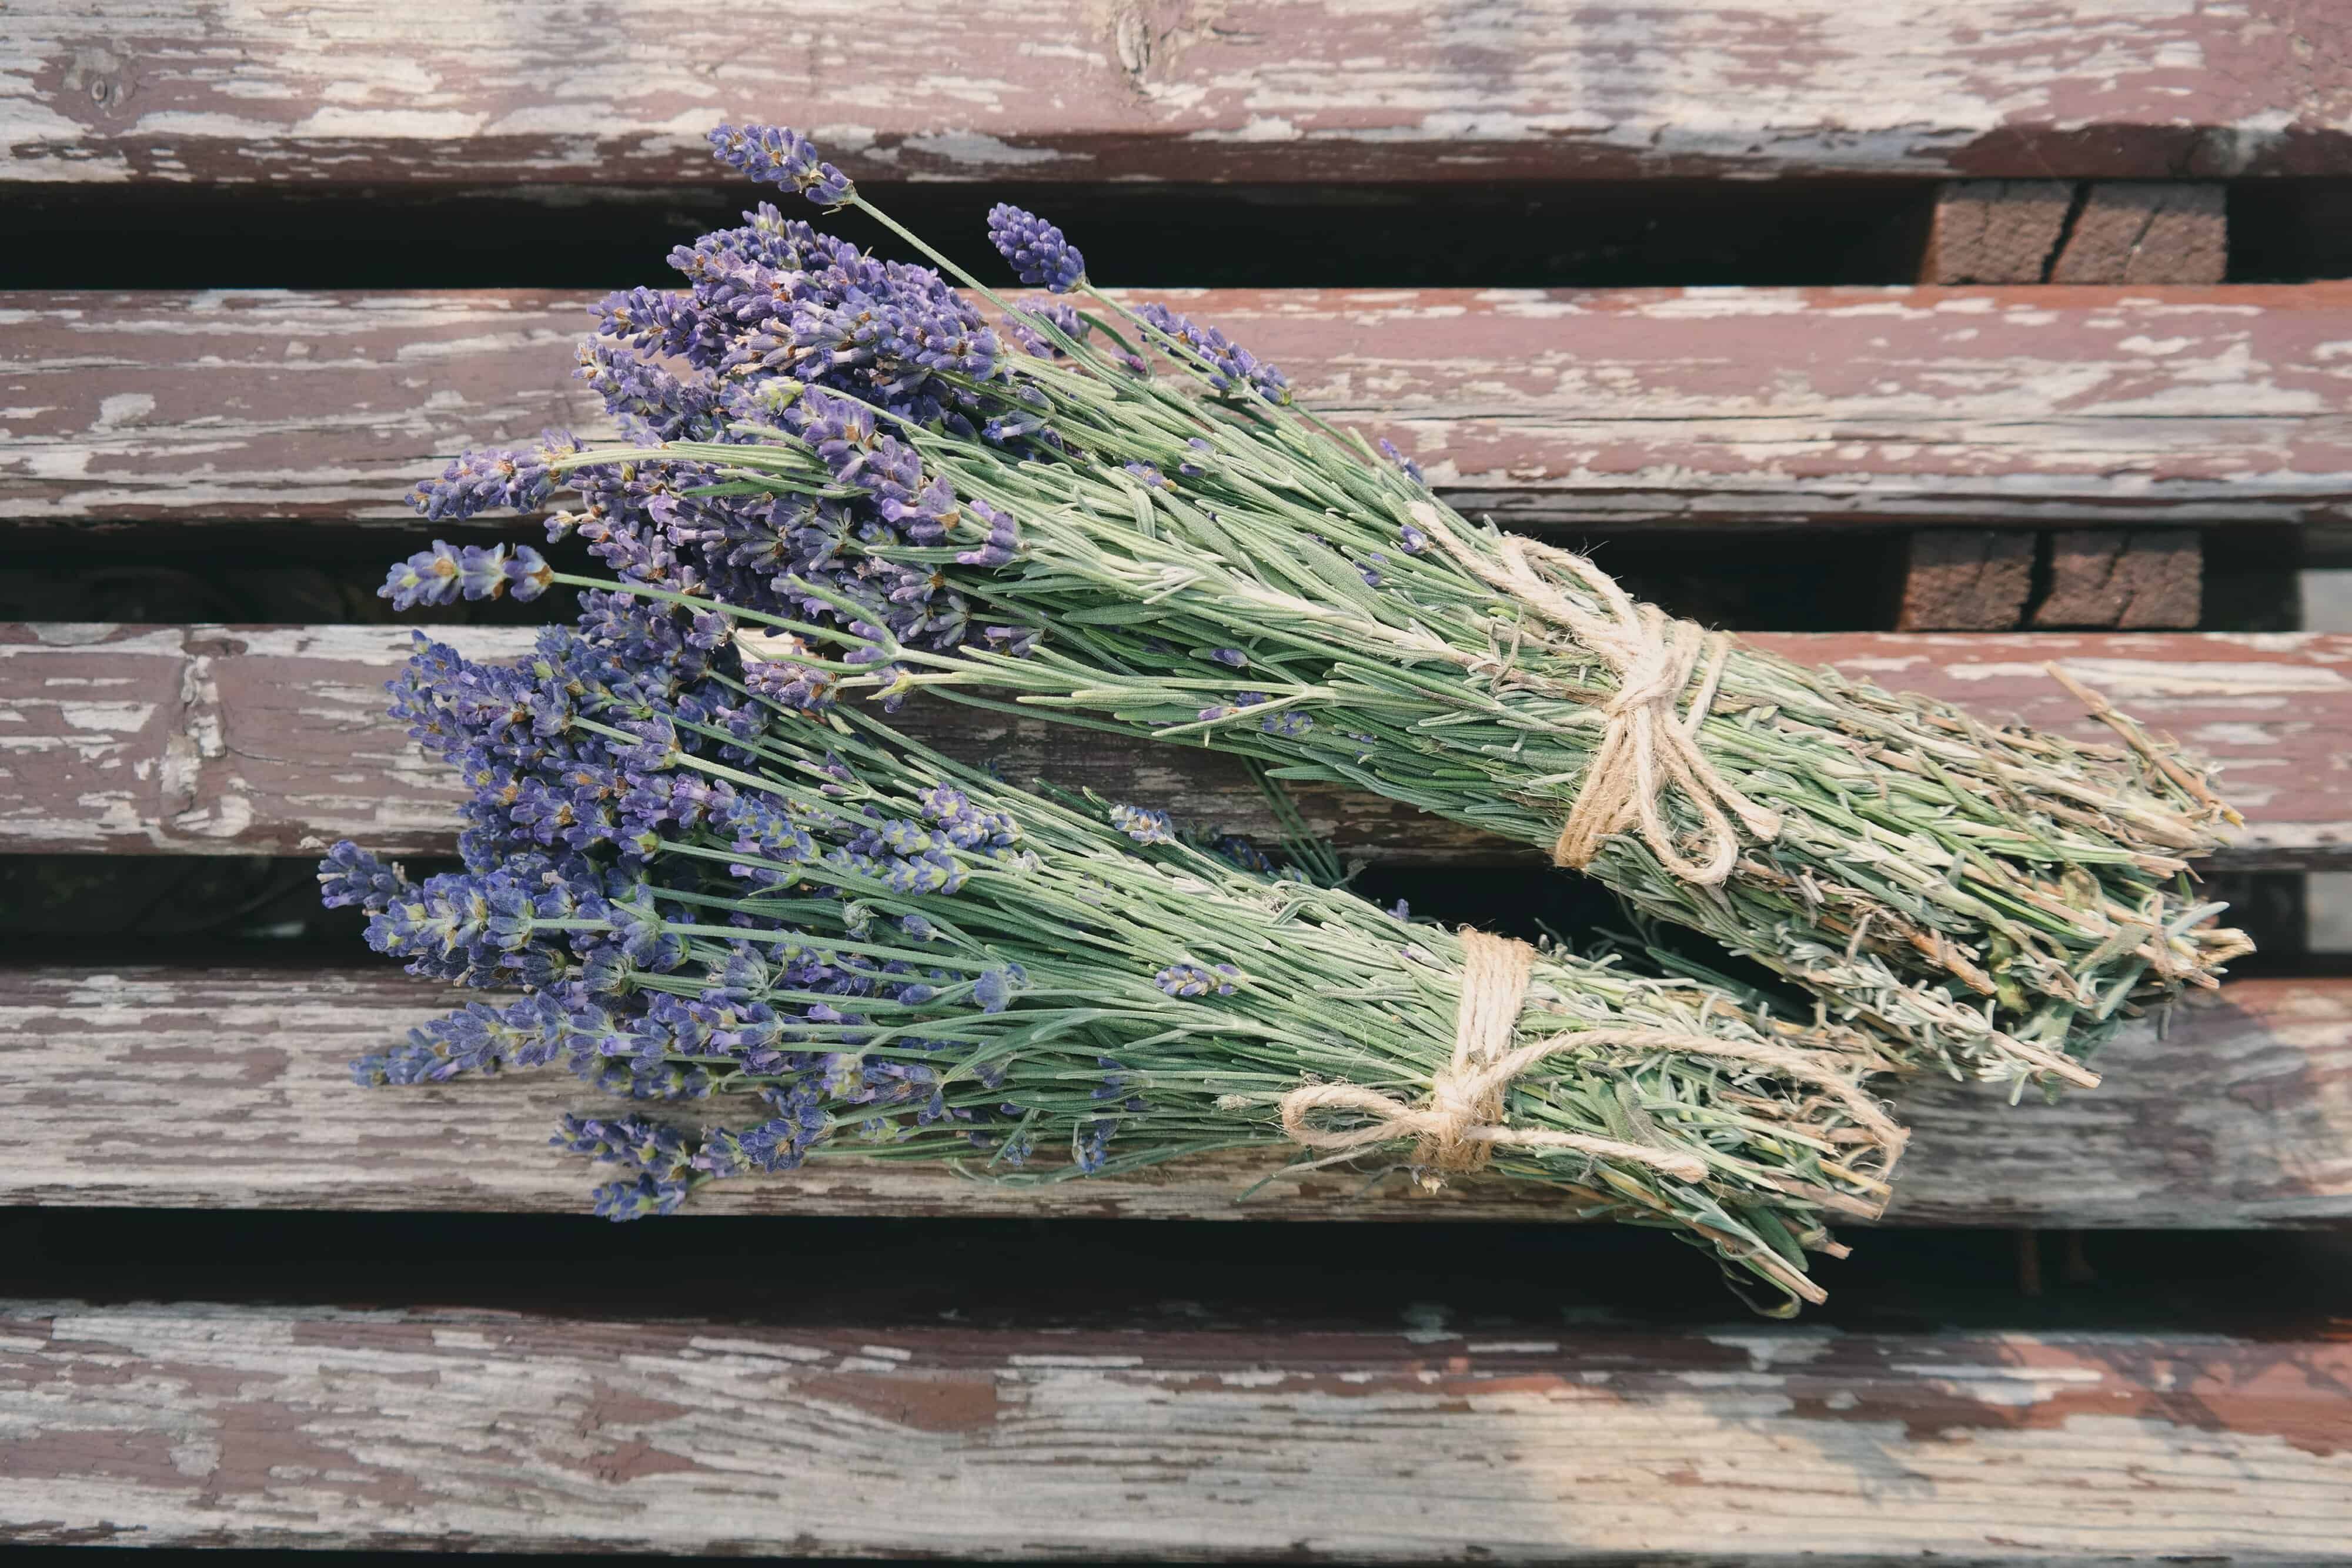 bundles of lavender